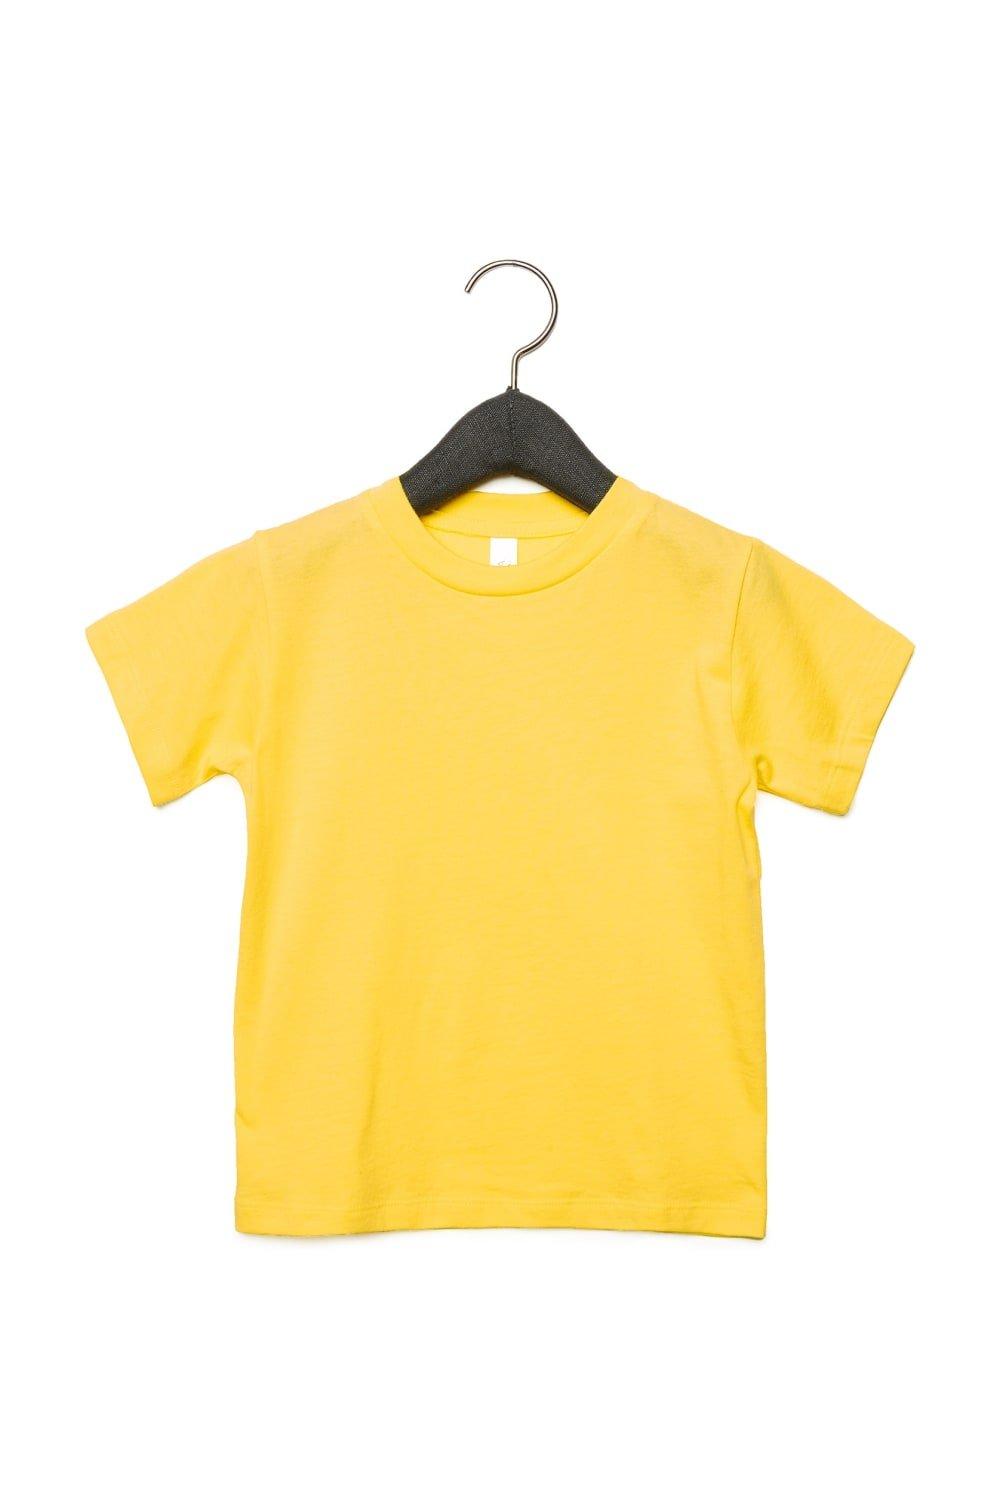 Футболка из джерси с коротким рукавом Bella + Canvas, желтый футболка из джерси с коротким рукавом bella canvas белый